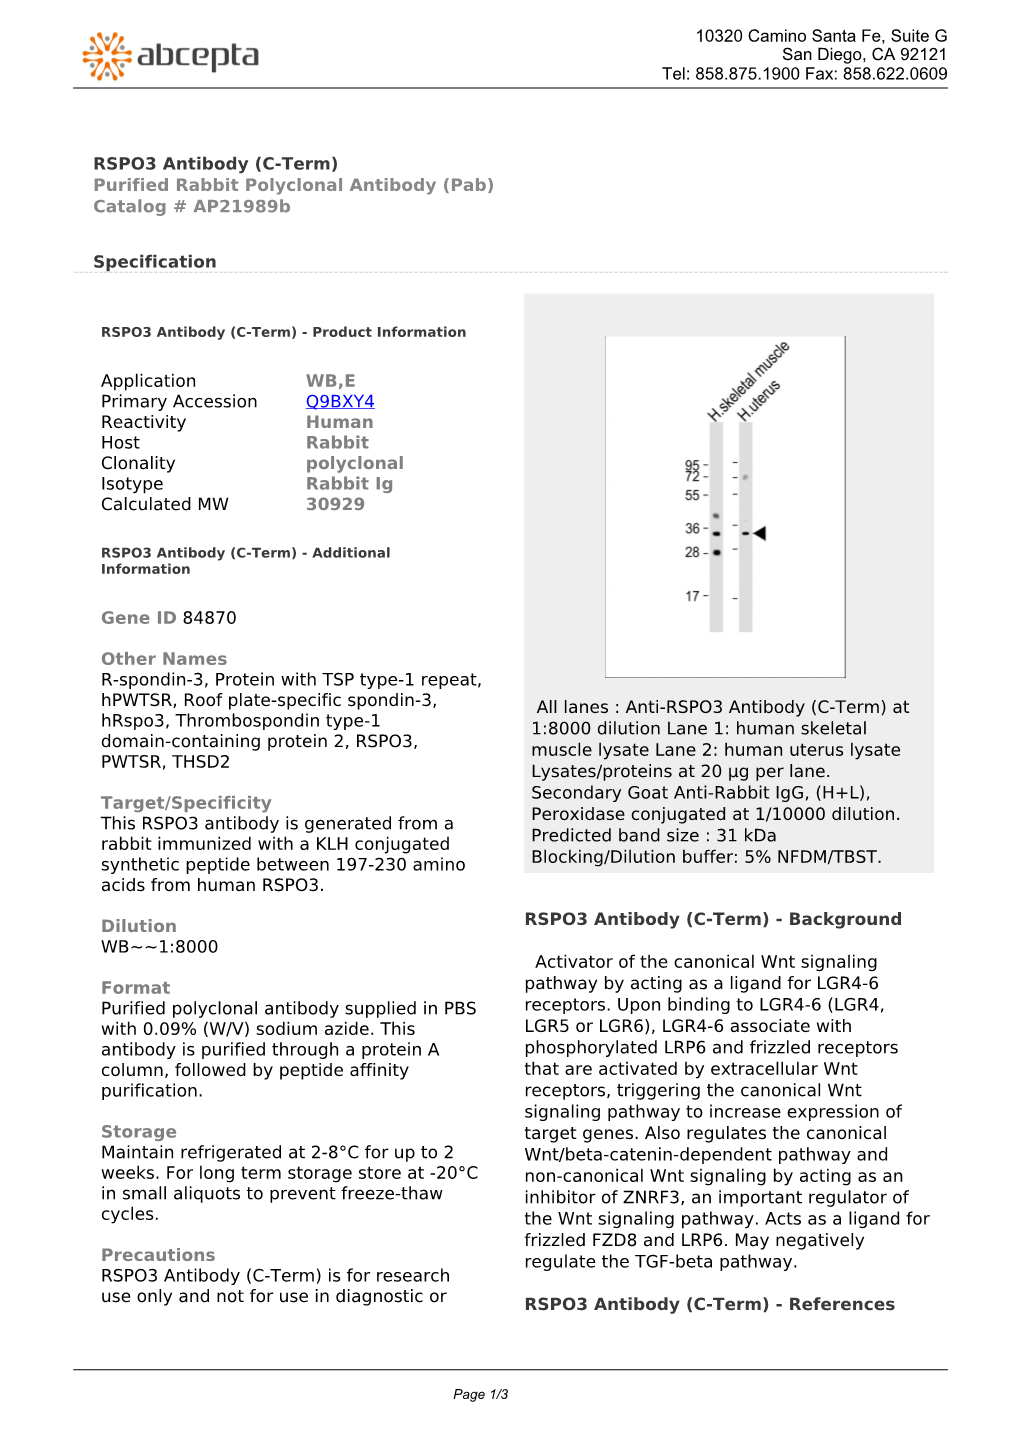 RSPO3 Antibody (C-Term) Purified Rabbit Polyclonal Antibody (Pab) Catalog # Ap21989b